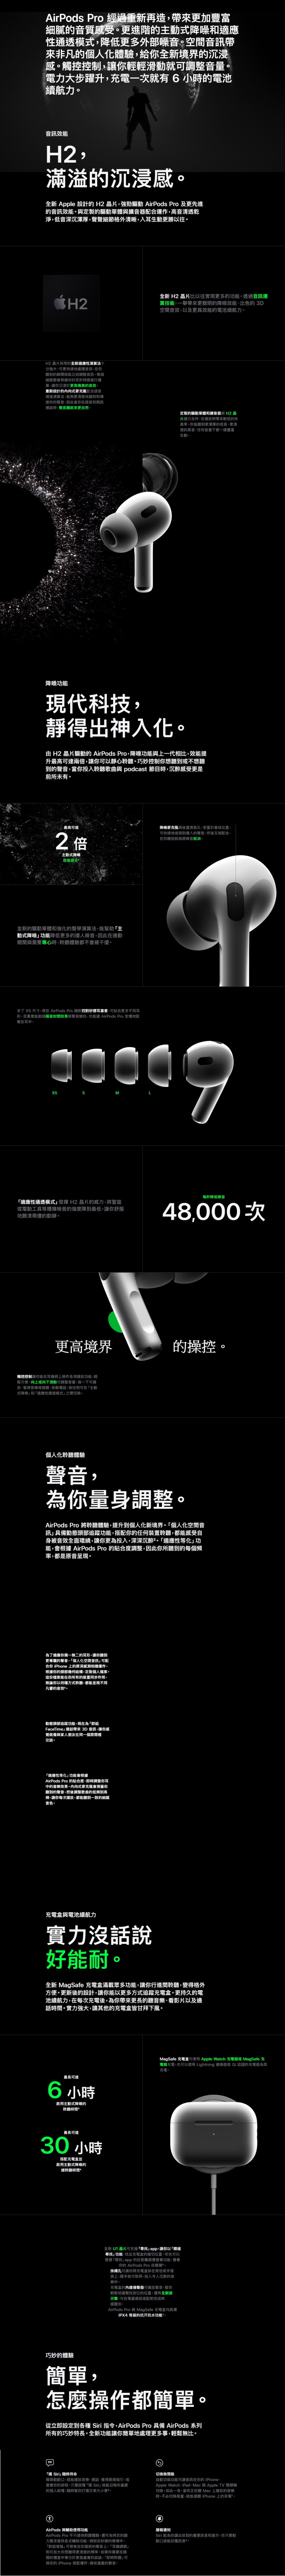 Apple AirPods Pro (第2 代)規格介紹| 中華電信網路門市CHT.com.tw